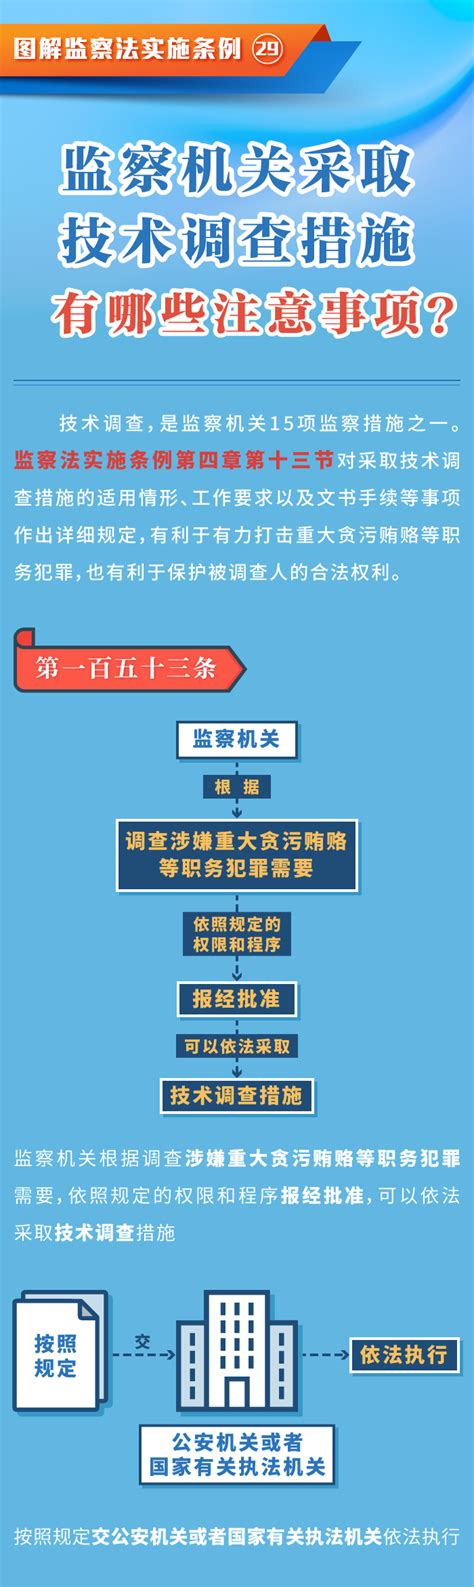 学习贯彻《中华人民共和国监察法实施条例》》_文库-报告厅